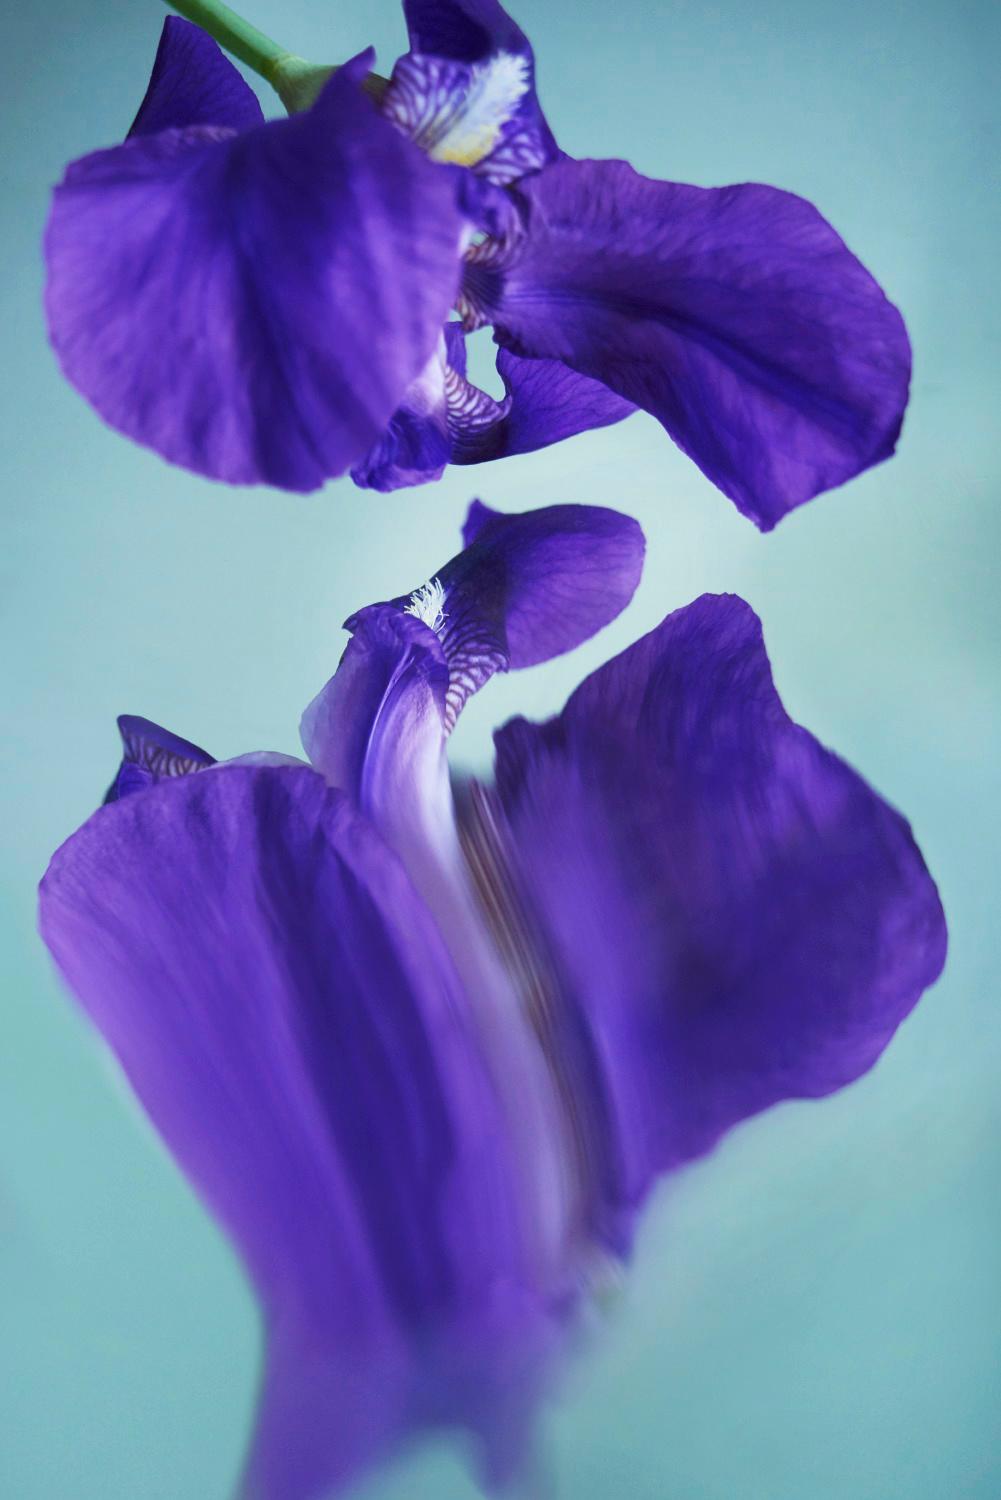 Sophie Delaporte Color Photograph - Flowers#07, flowers, purple, water